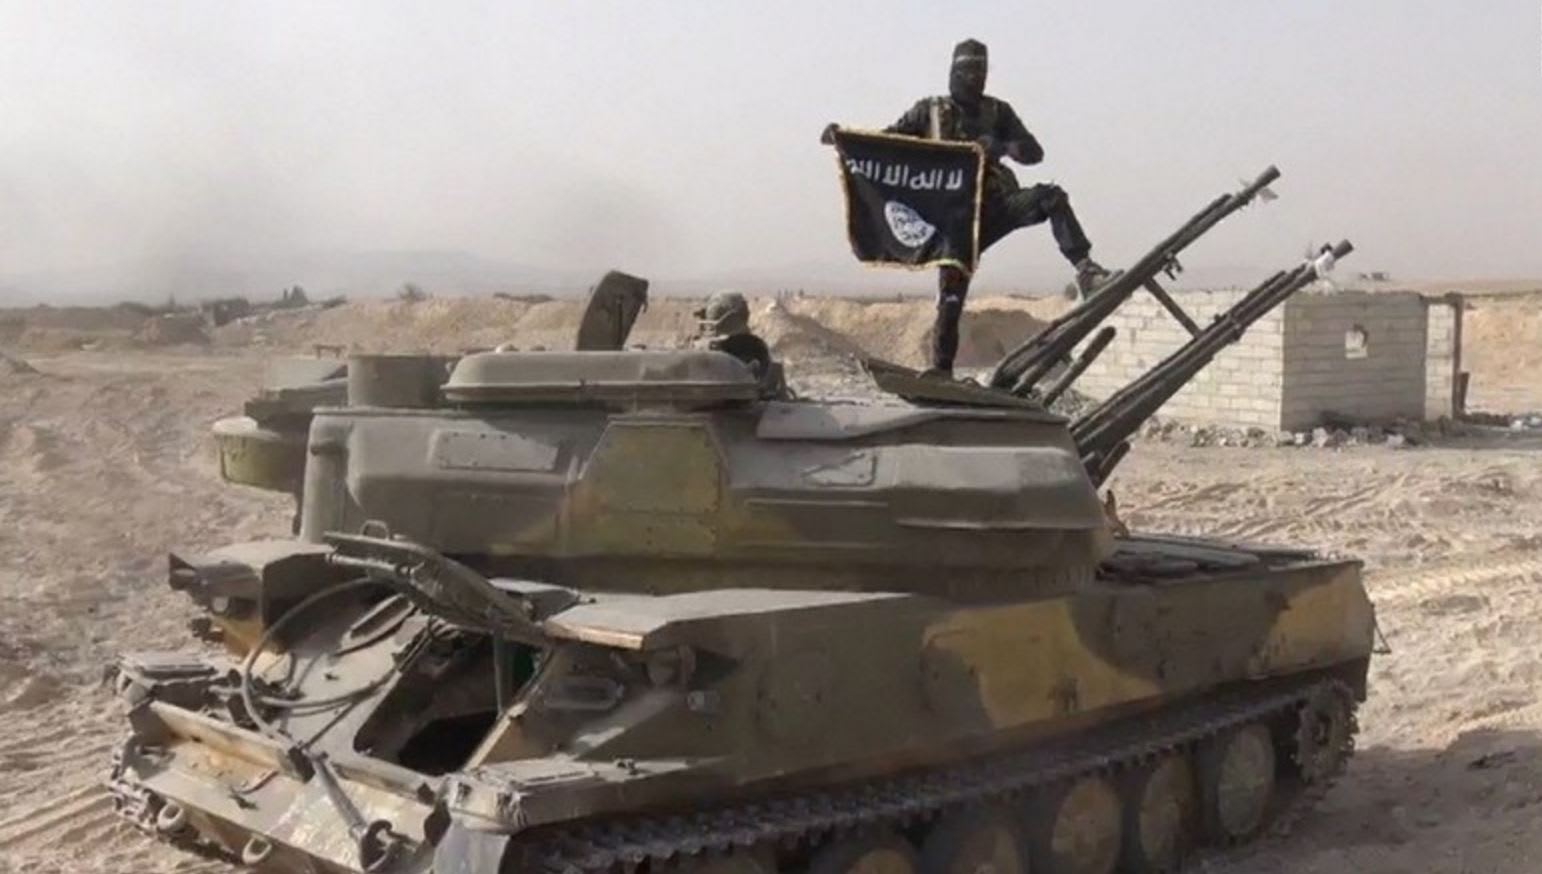 "بوكو حرام" تتفوق على "داعش" وتحصل على لقب "الجماعة الإرهابية الأكثر دموية" في العالم